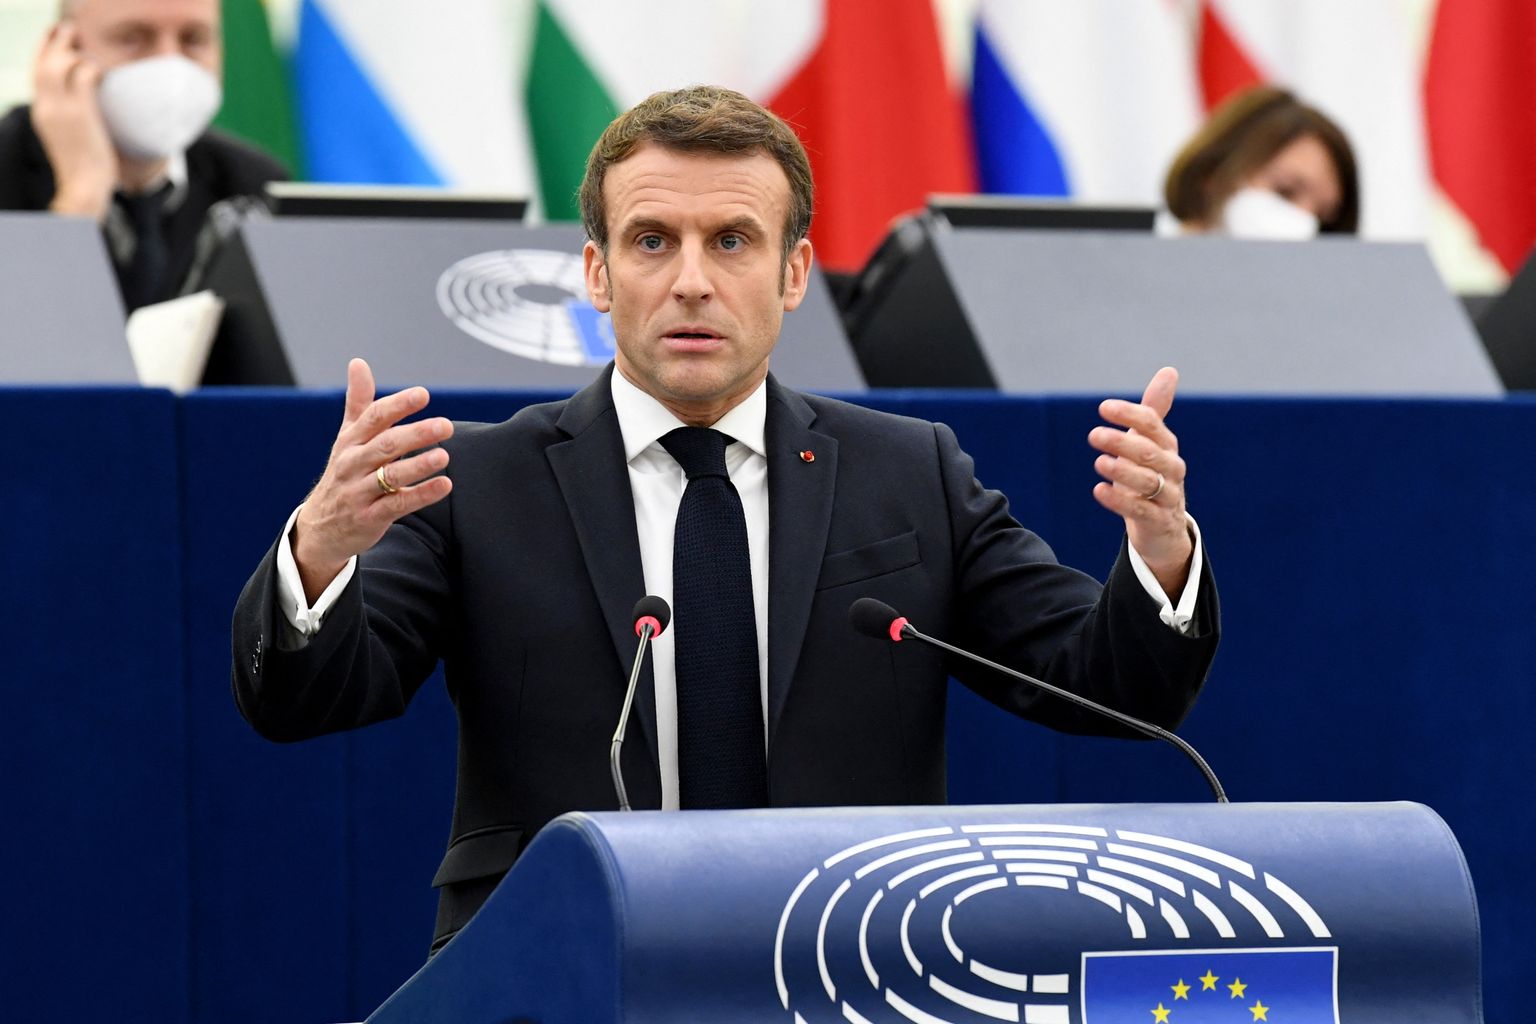 Prantsuse president Emmanuel Macron 19. jaanuaril 2022 europarlamendis eesistumise avakõnet pidamas. Muuhulgas paistis poliitik puudutavat oma kauaaegset unistust Euroopa armeest.